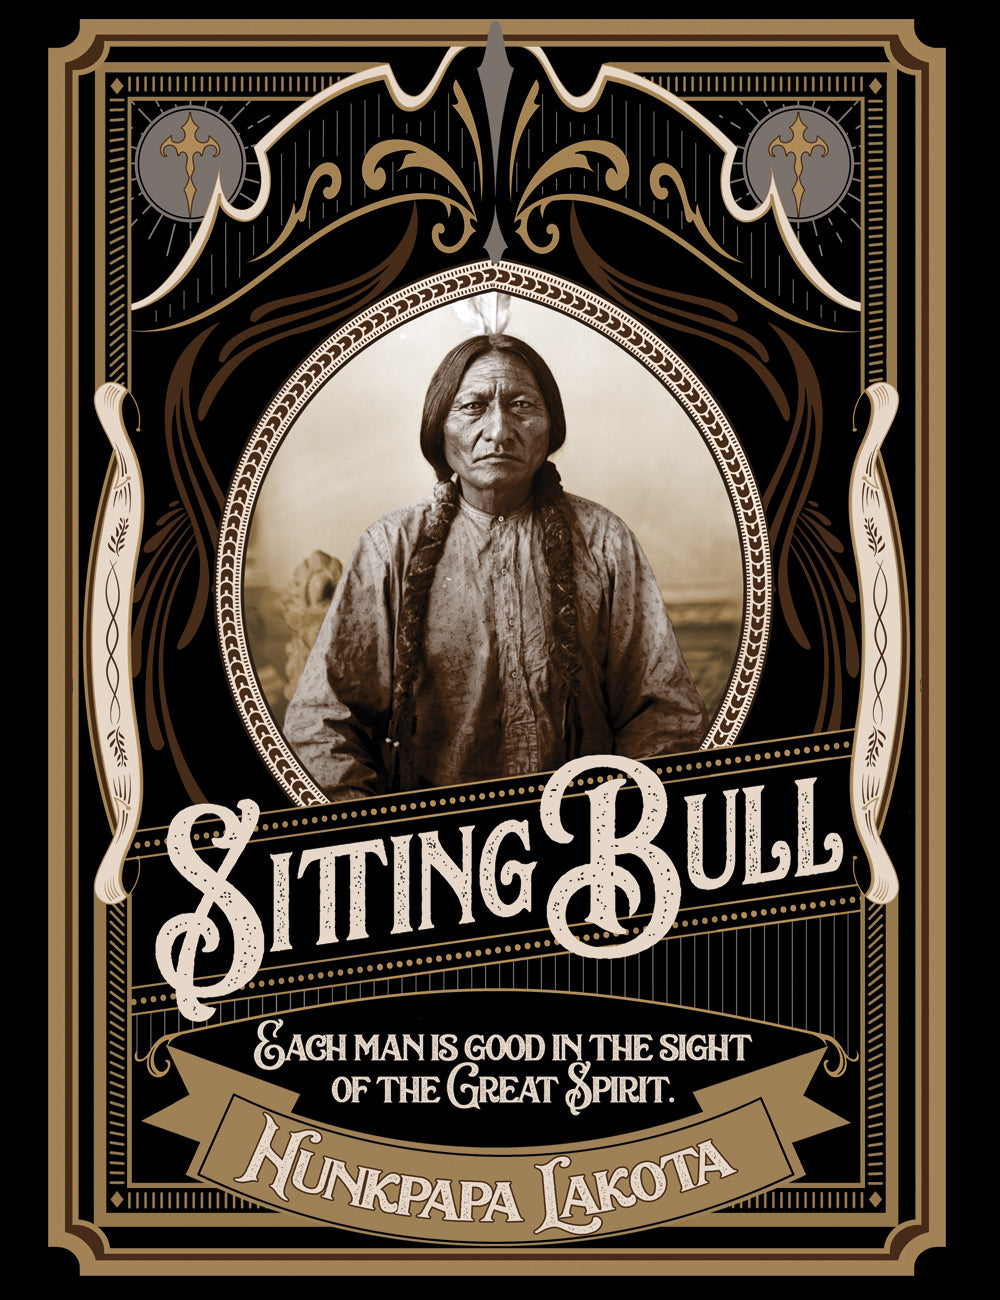 Hunkpapa Lakota Sitting Bull T-Shirt